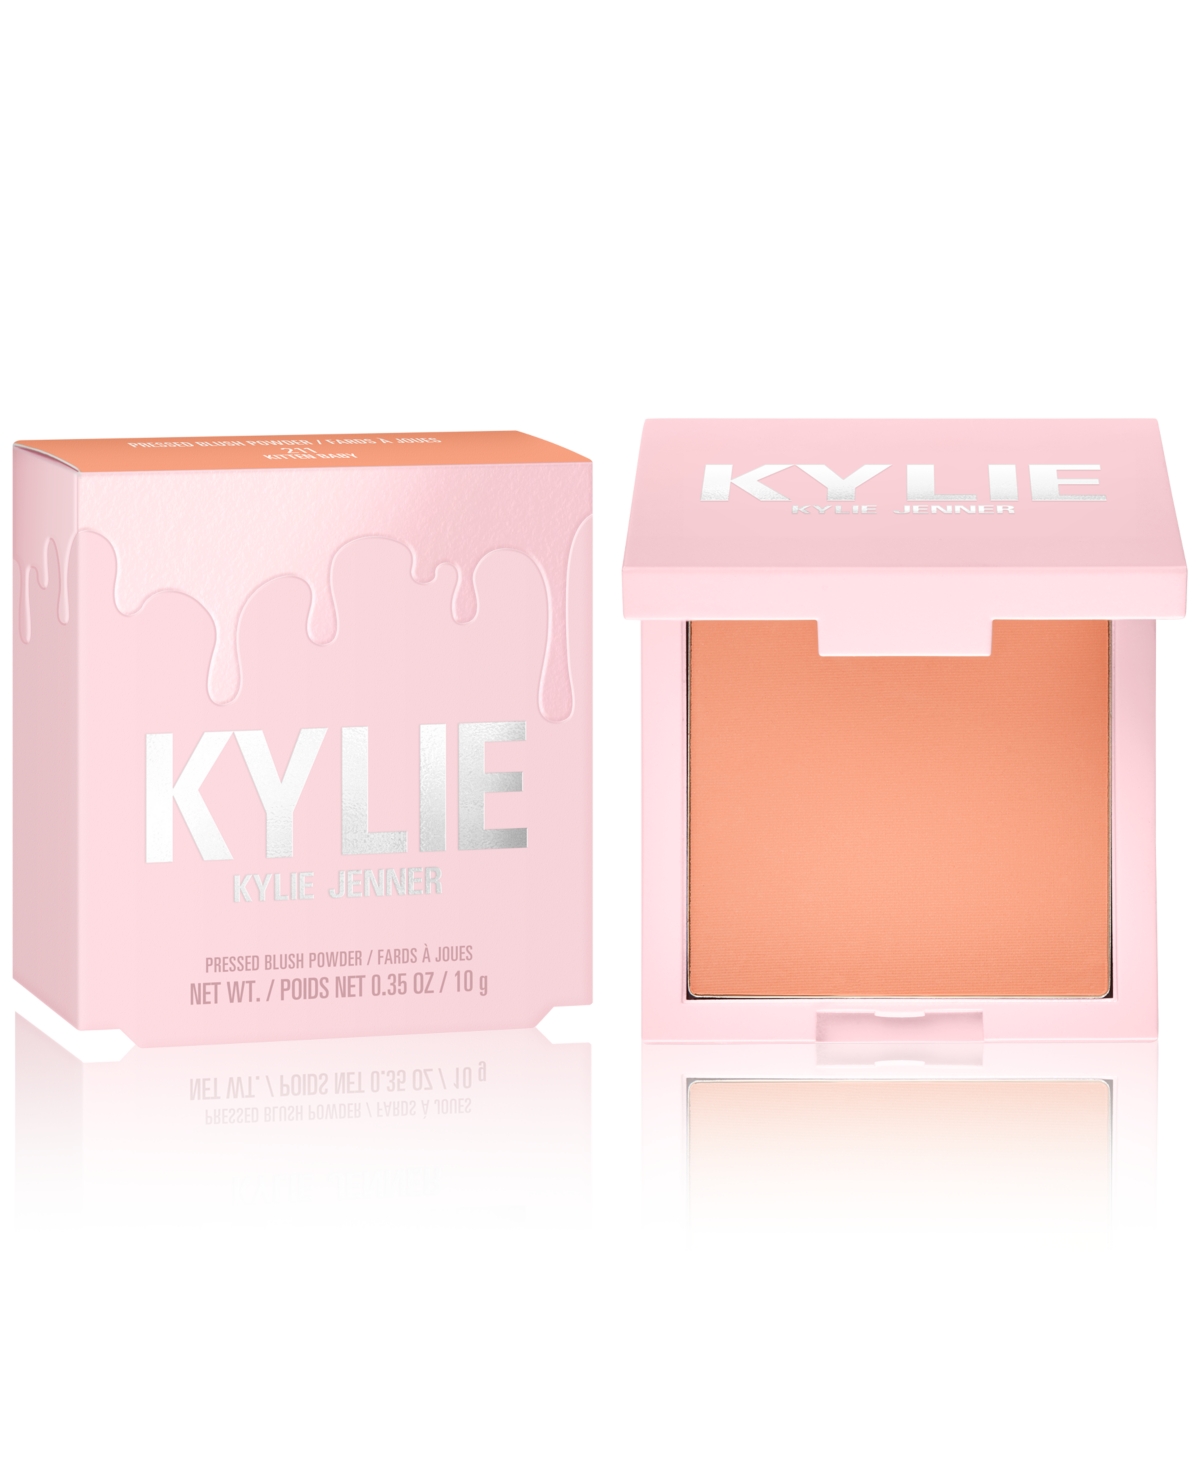 Kylie Cosmetics Pressed Blush Powder In Kitten Baby